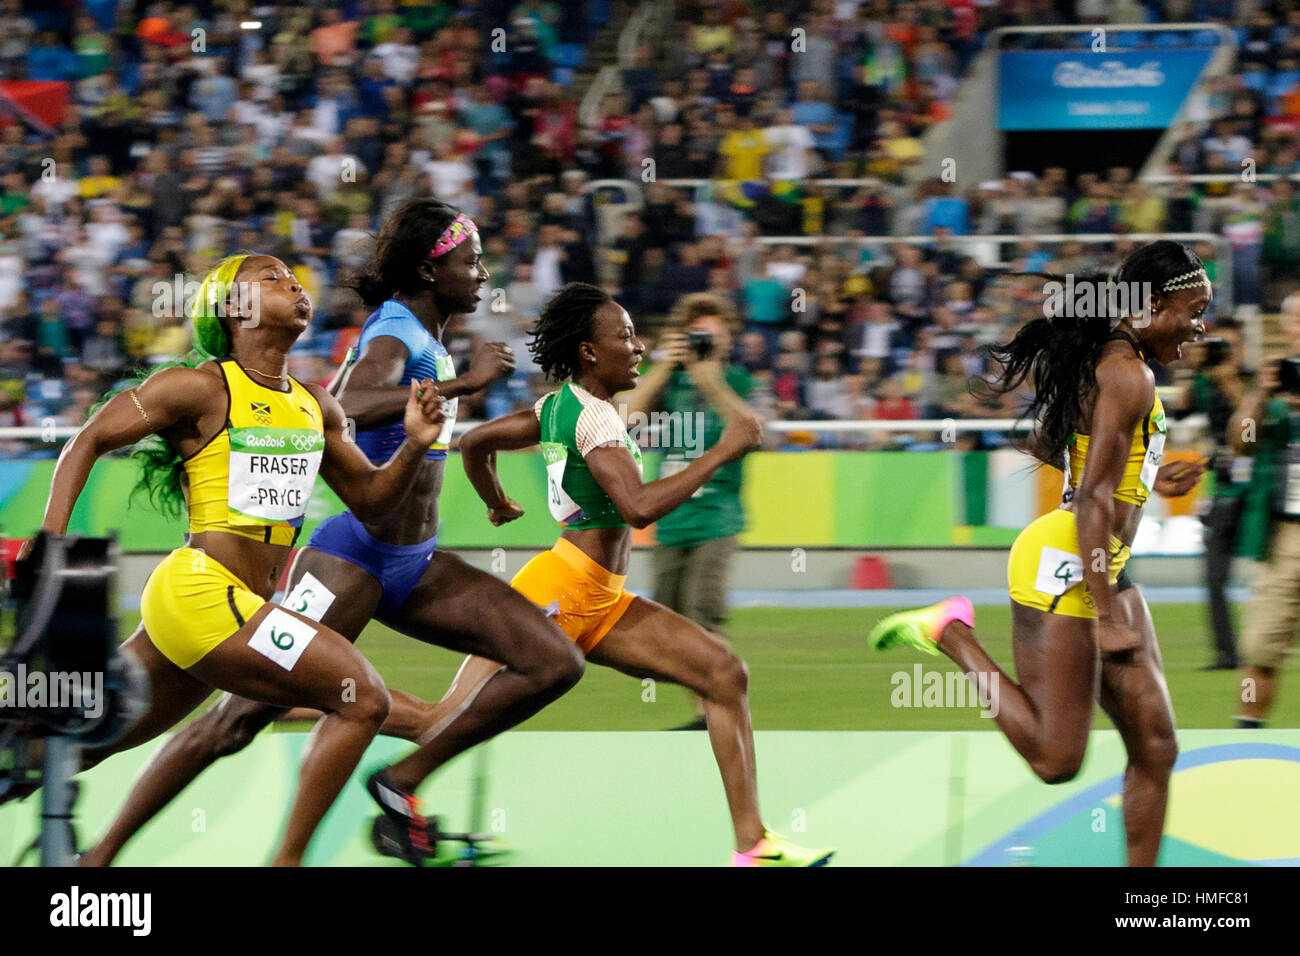 Río de Janeiro, Brasil. 13 de agosto de 2016 .Elaine Tompson (JAM) lleva el campo en su camino para ganar la medalla de oro en los 100 metros femeninos en el 2016 Ol Foto de stock